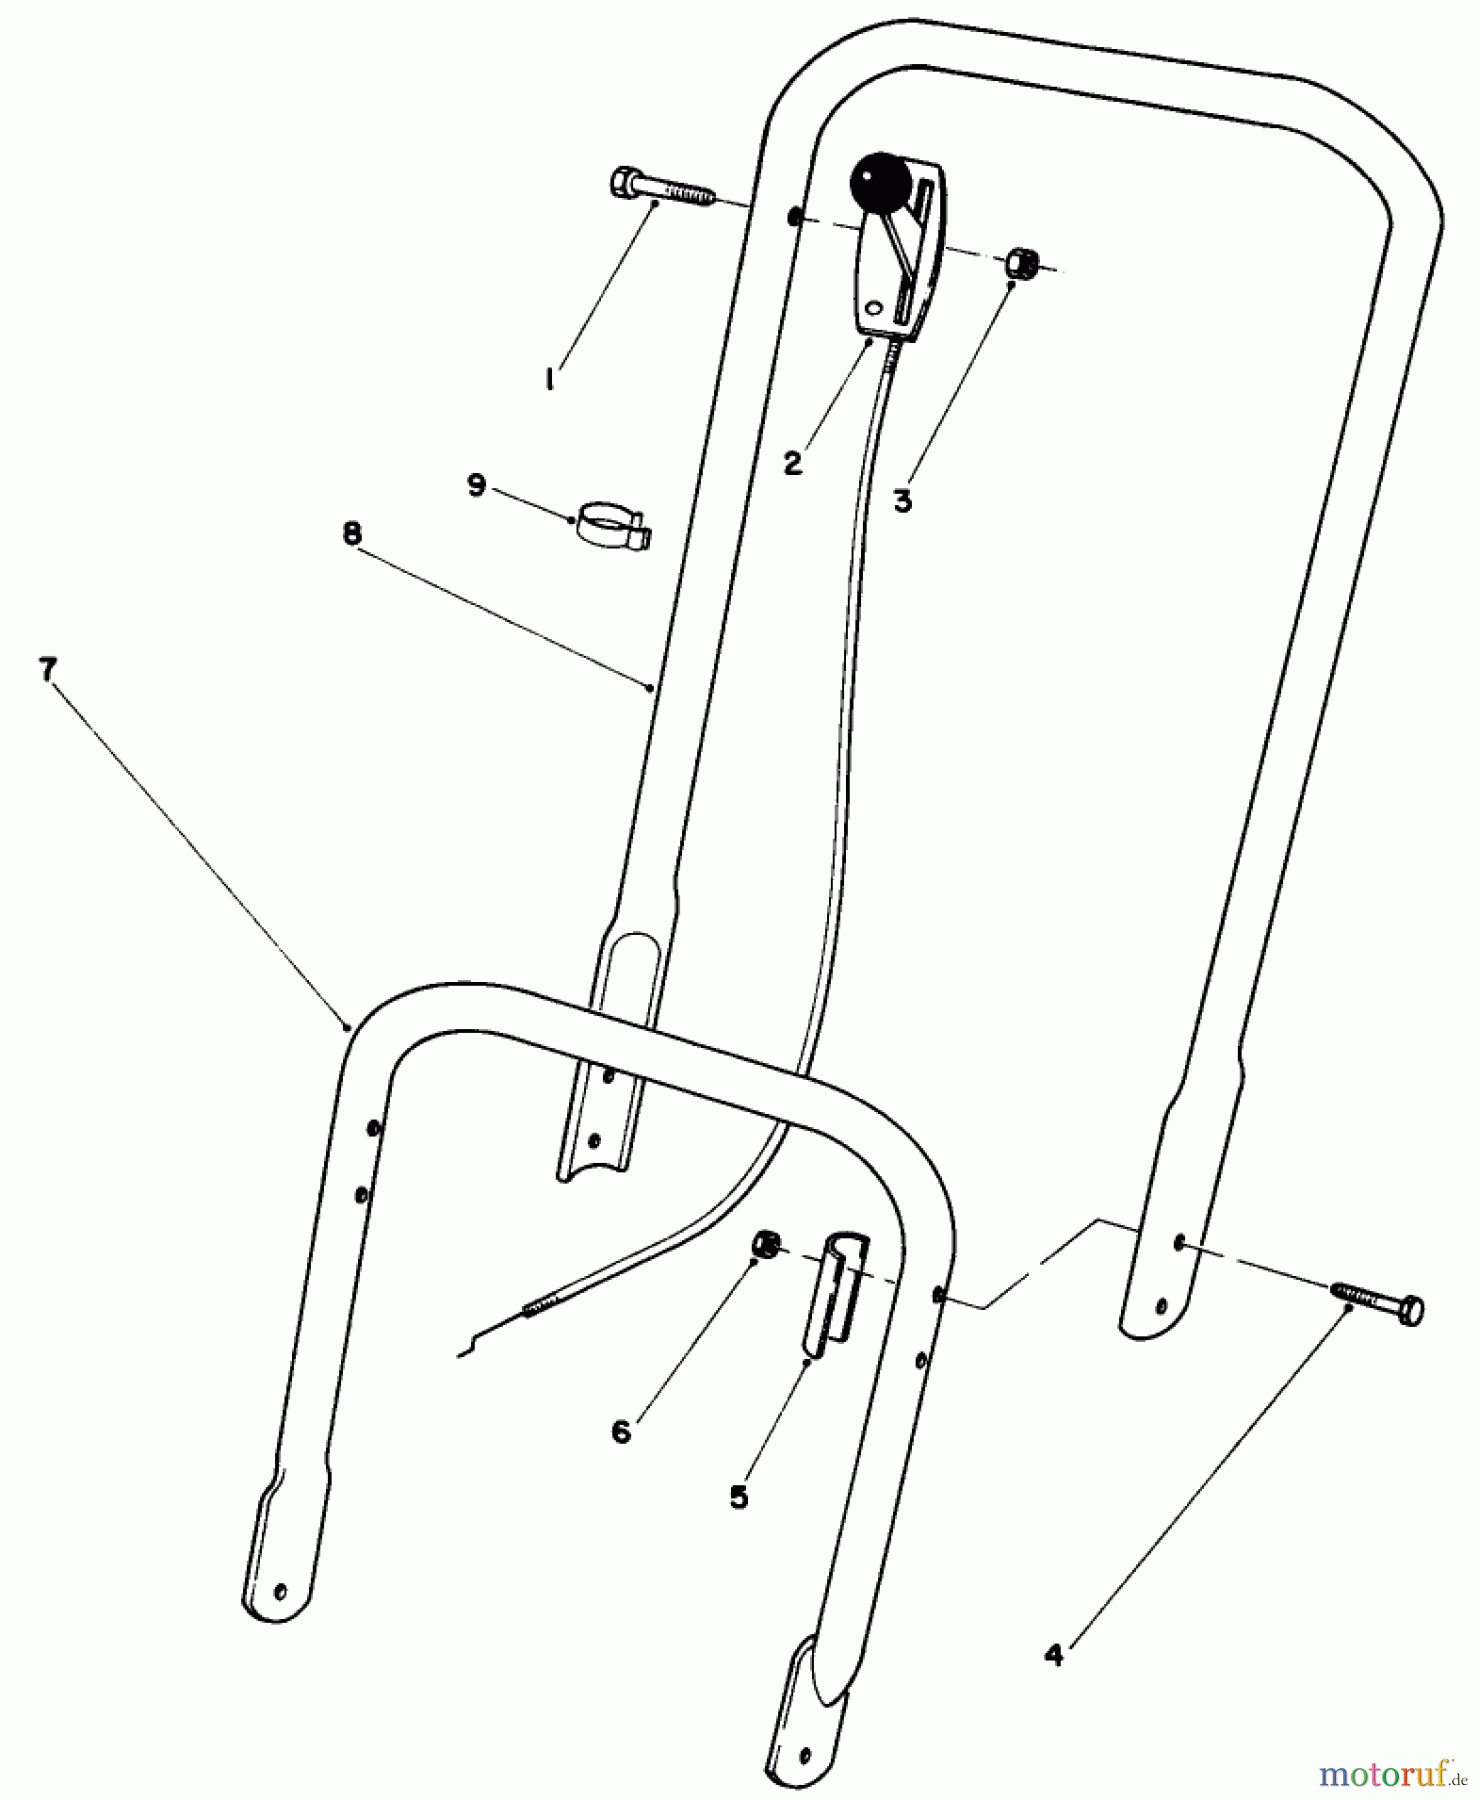  Toro Neu Mowers, Walk-Behind Seite 2 22005 - Toro Lawnmower, 1989 (9000001-9999999) HANDLE ASSEMBLY